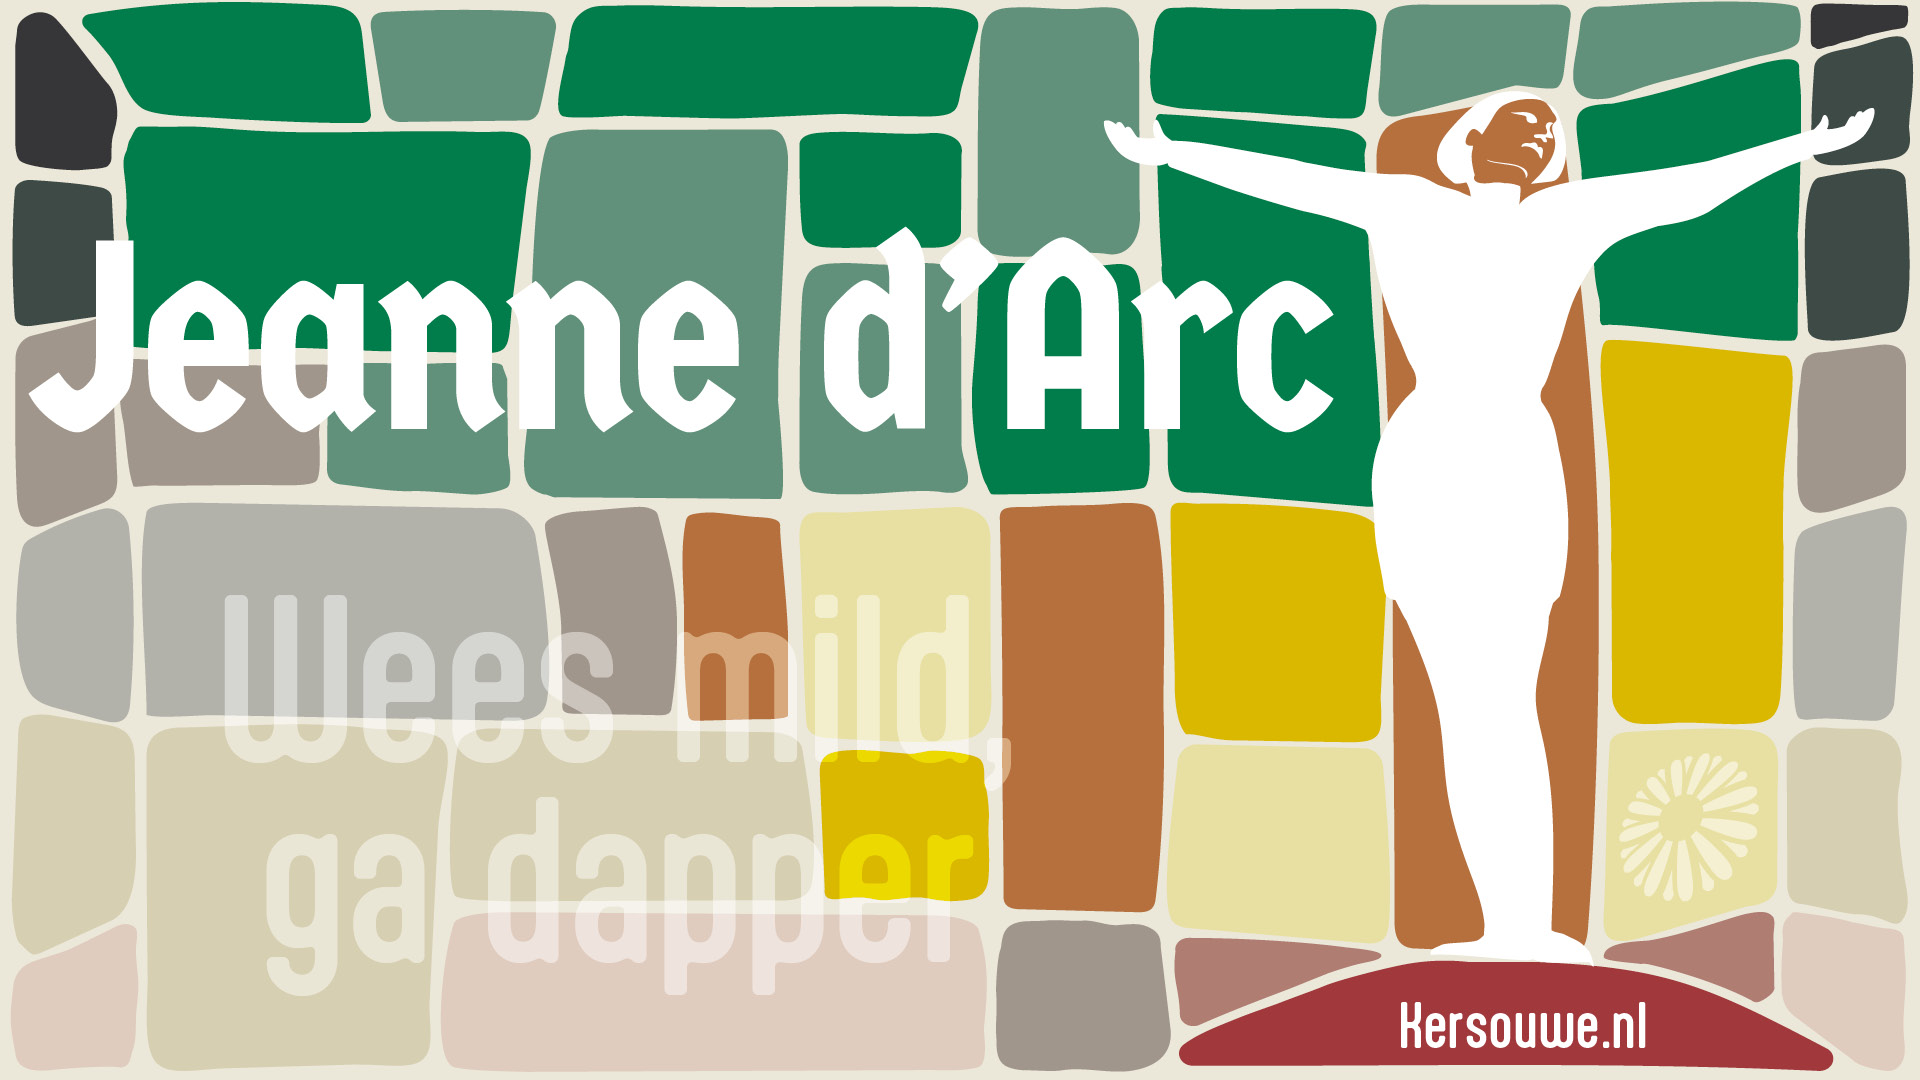 Jeanne d’Arc | Theatergroep Kersouwe